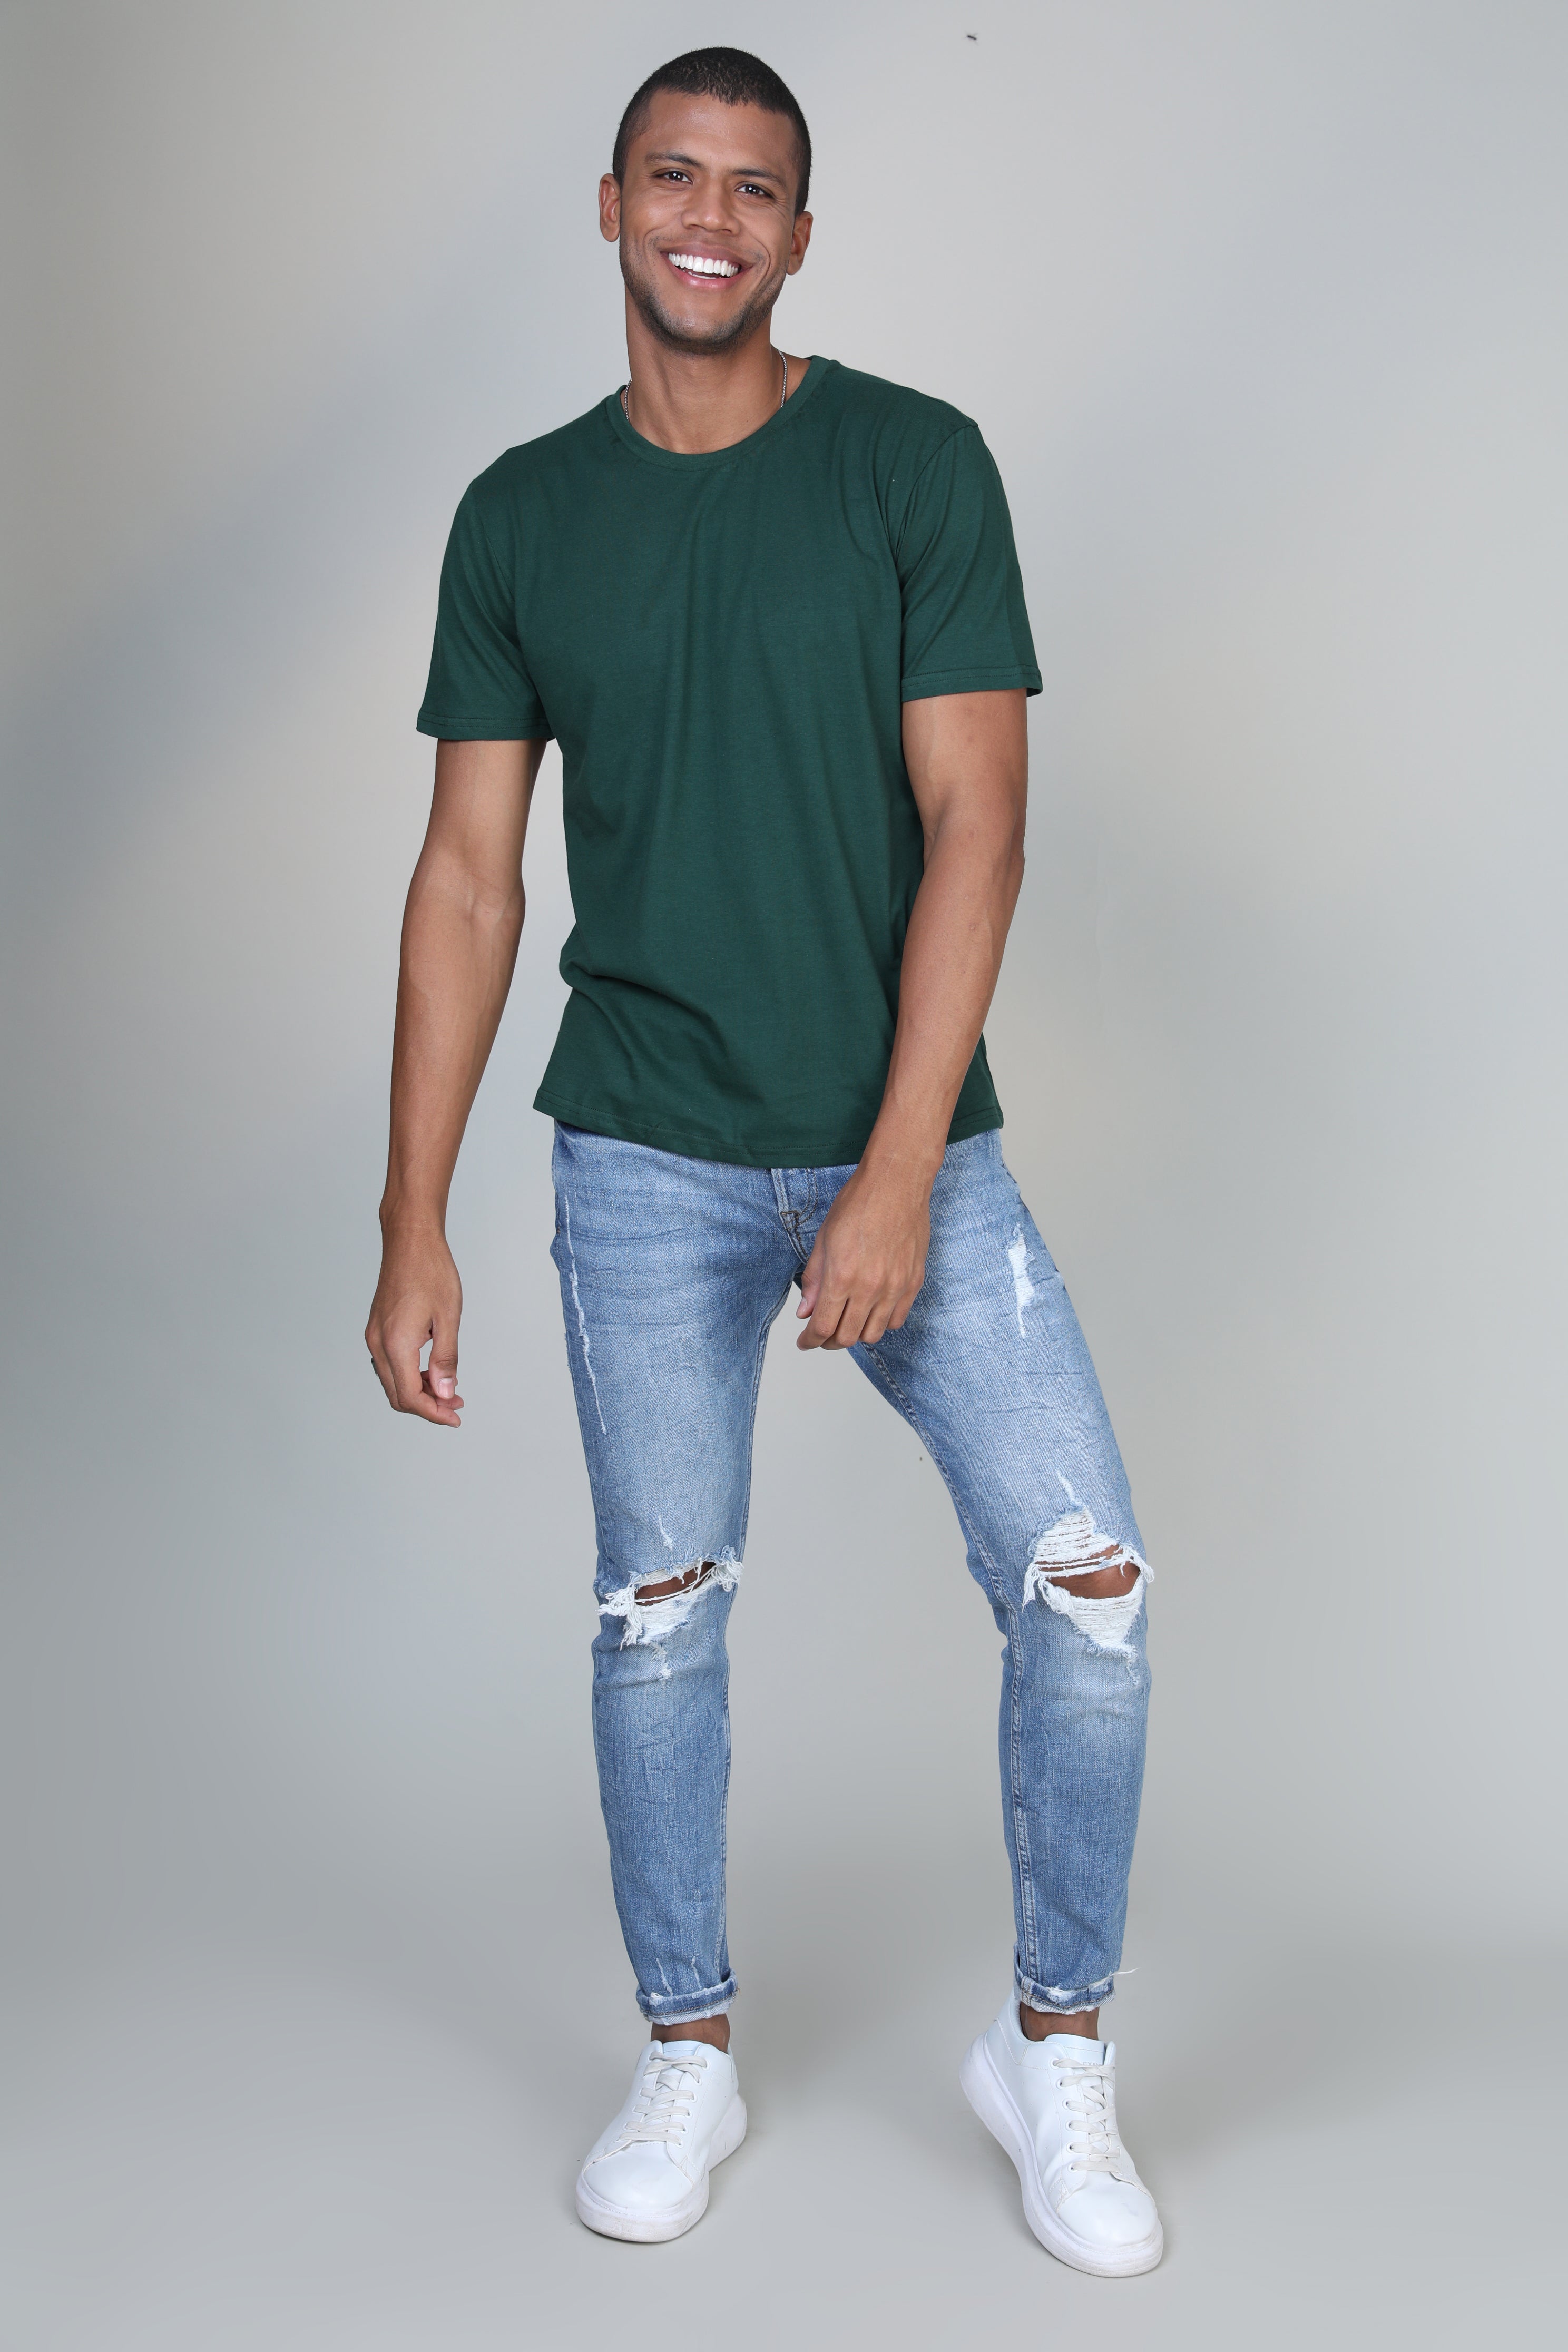 Emerald Green- Short sleeve t-shirt